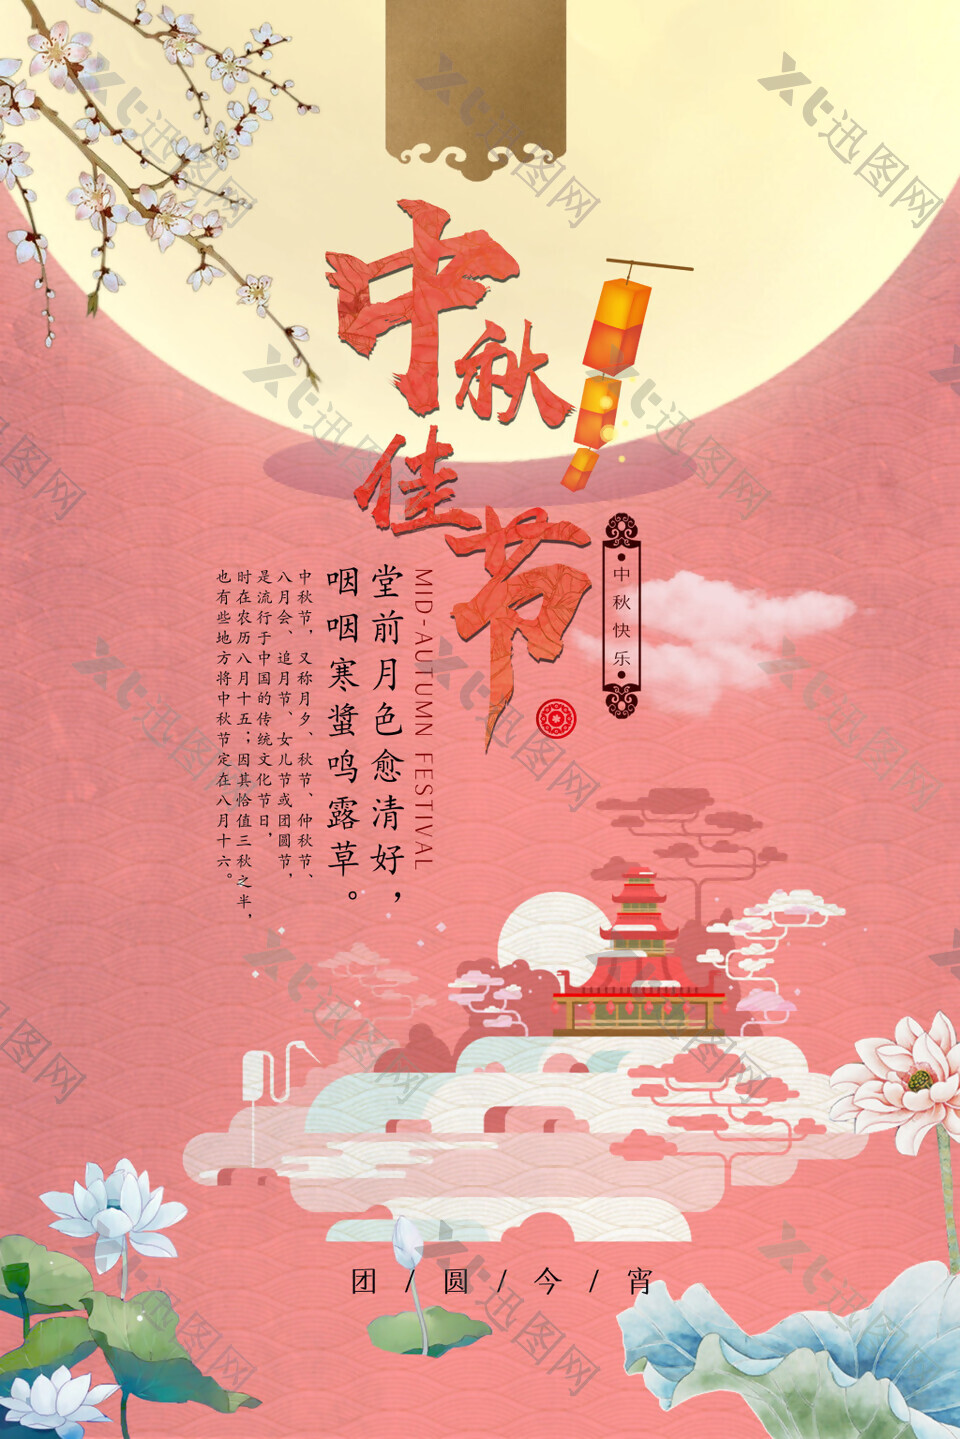 中秋佳节宣传海报设计